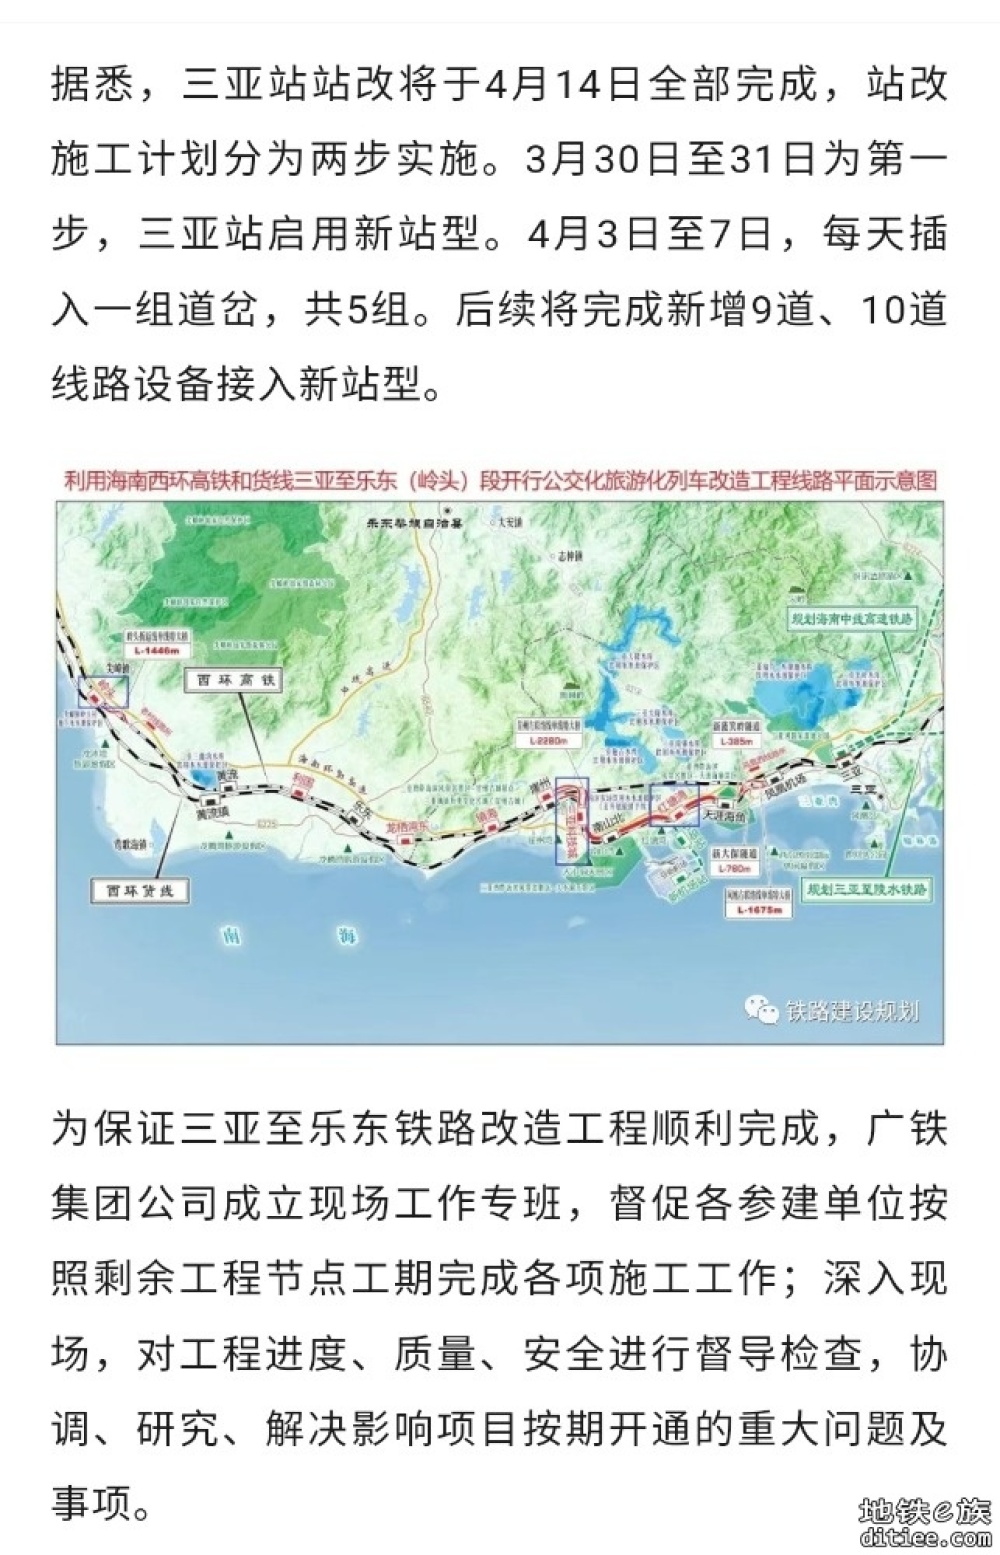 三亚至乐东公交化旅游化铁路三亚站改造启动